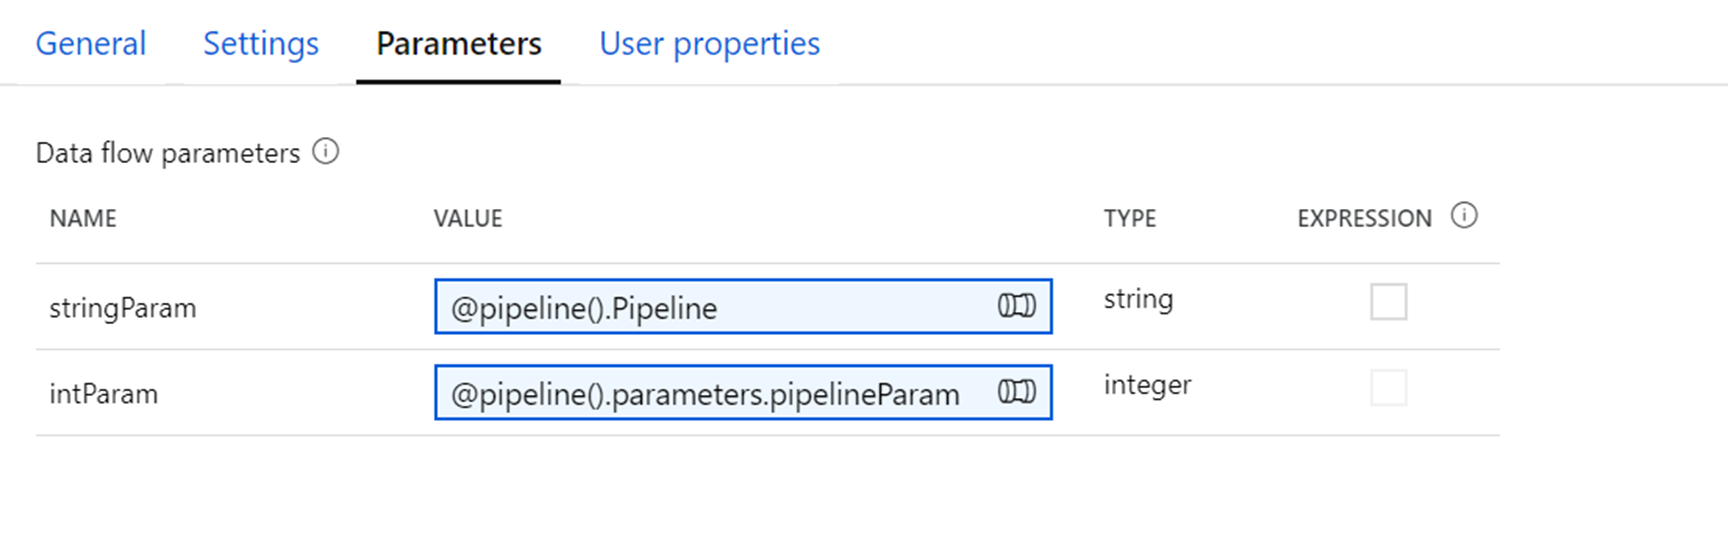 StringParam ve intParam adlı parametrelerin yer aldığı Parametreler sekmesini gösteren ekran görüntüsü.